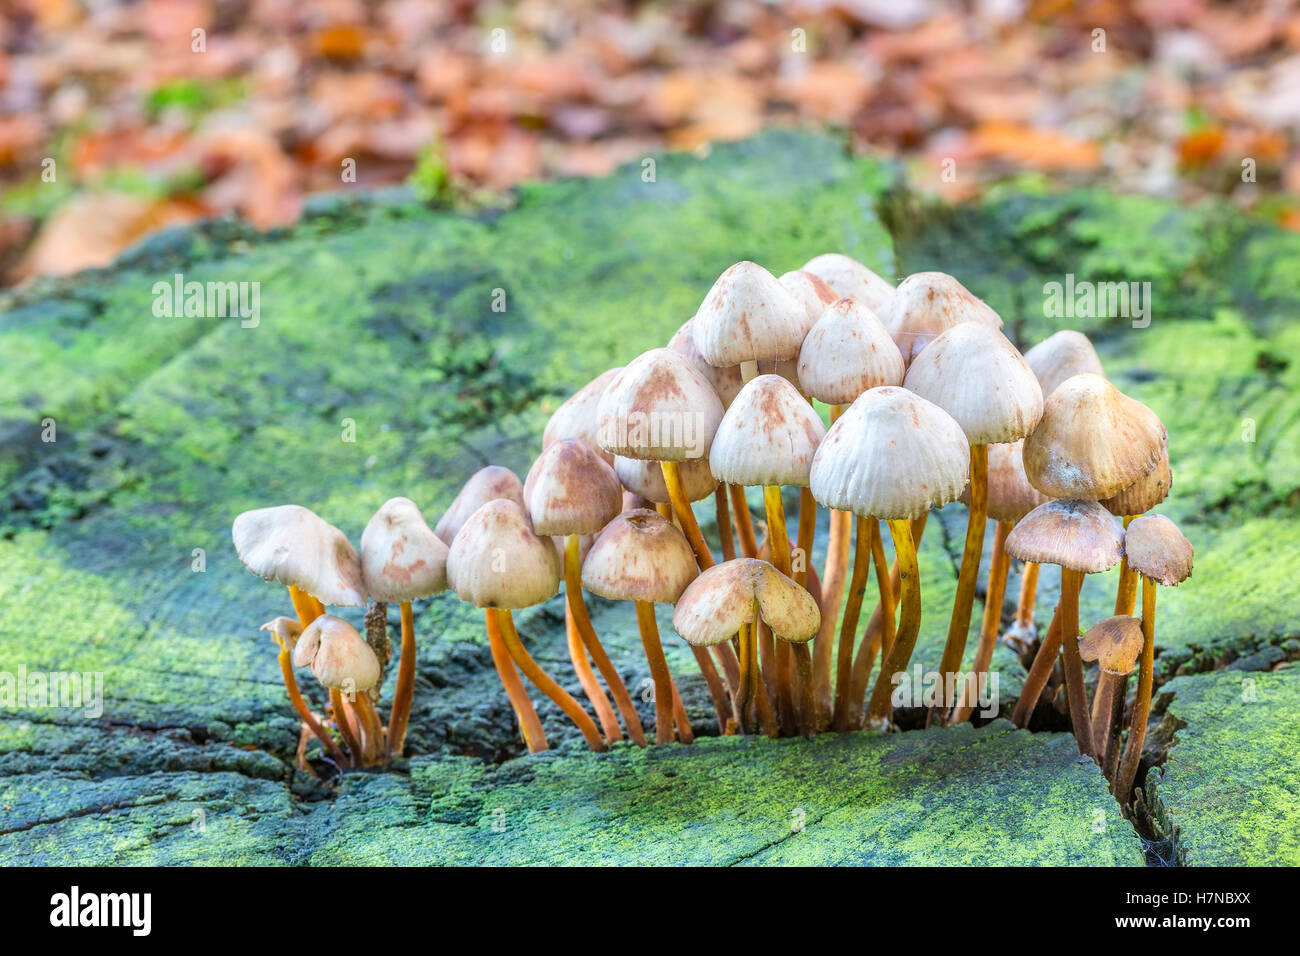 Group of mushrooms on green tree trunk in autumn season Stock Photo